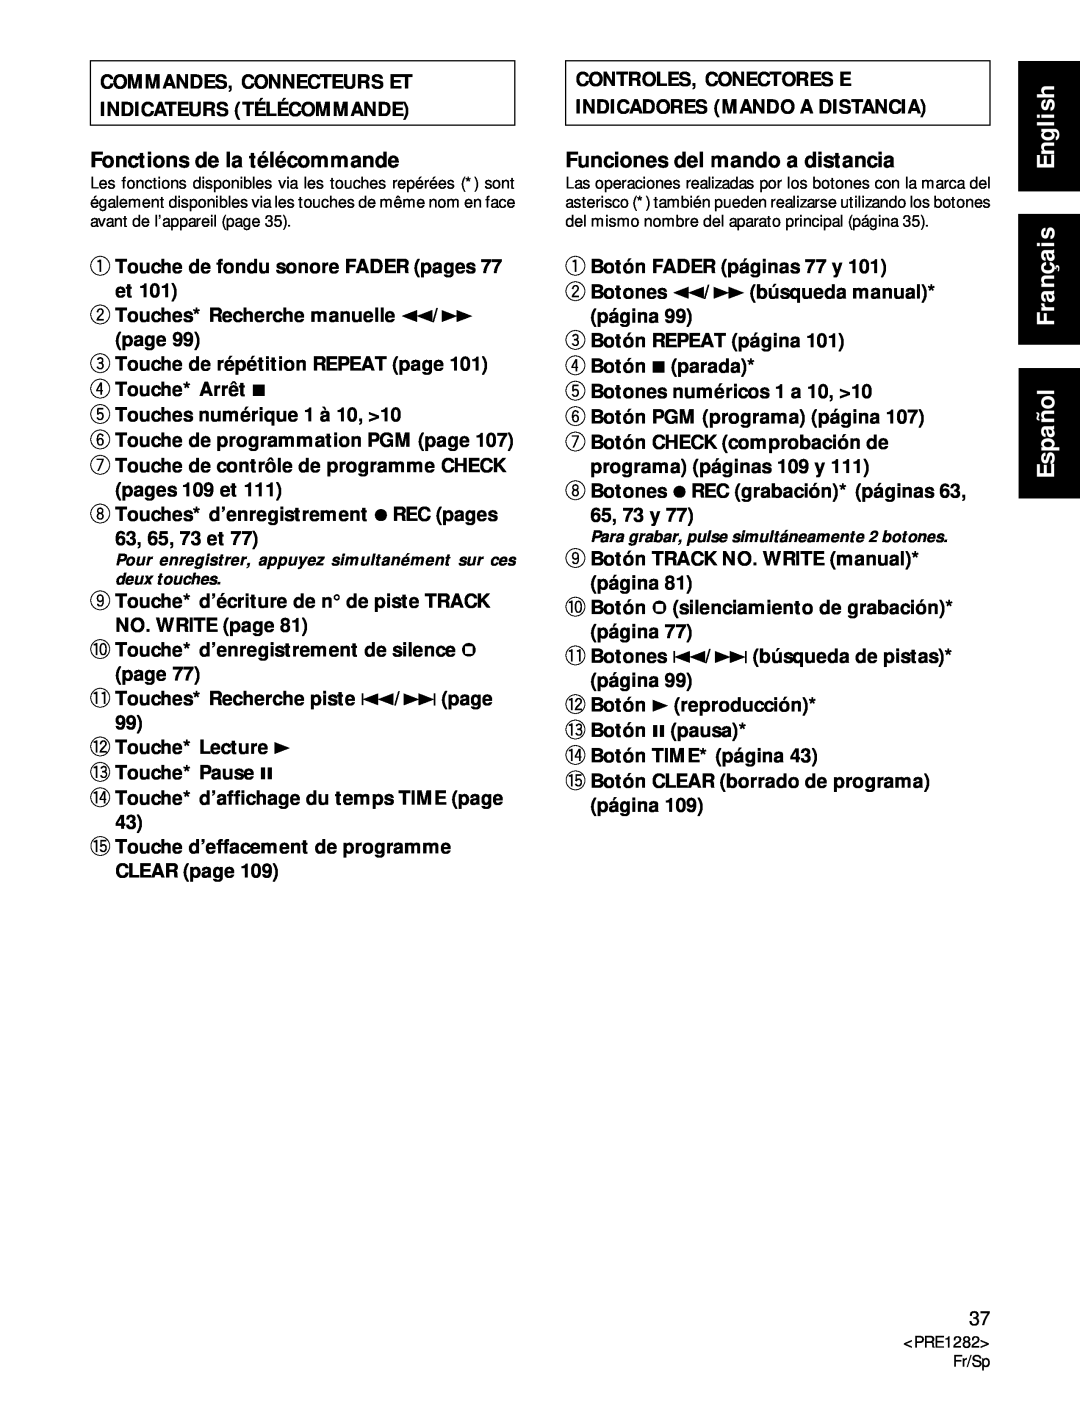 Americana Appliances CDR-850 manual Commandes, Connecteurs Et, Indicateurs Télécommande, Fonctions de la télécommande 